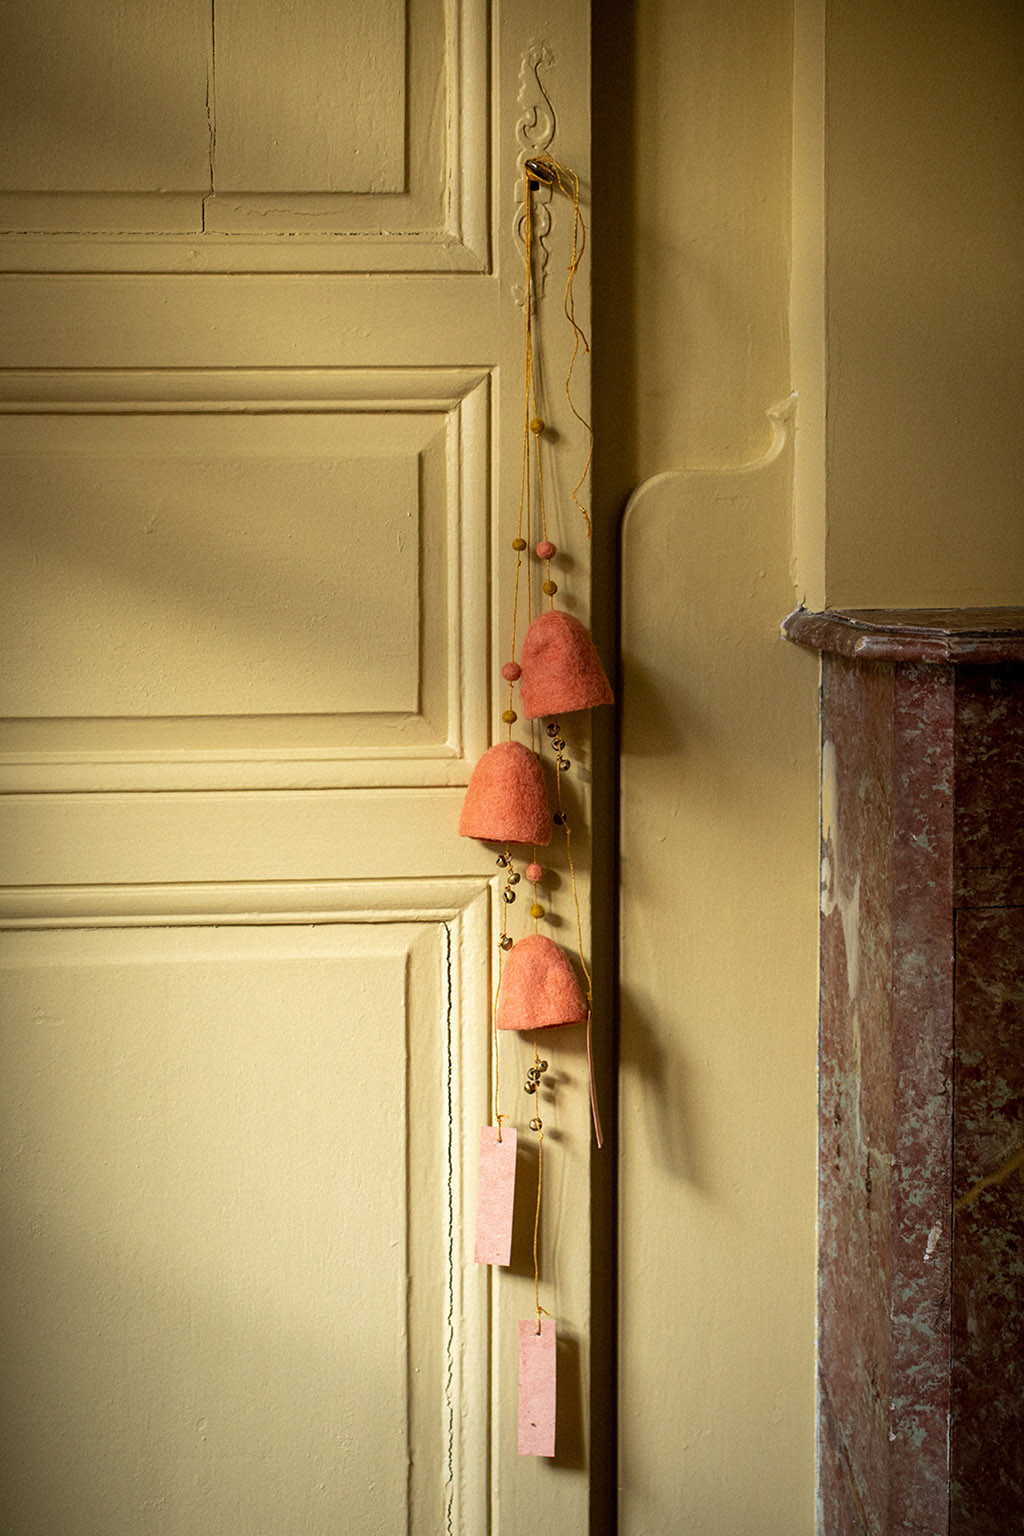 deux cloches en feutre suspendues à la poignées d'une porte pour un décoration poétique et colorée